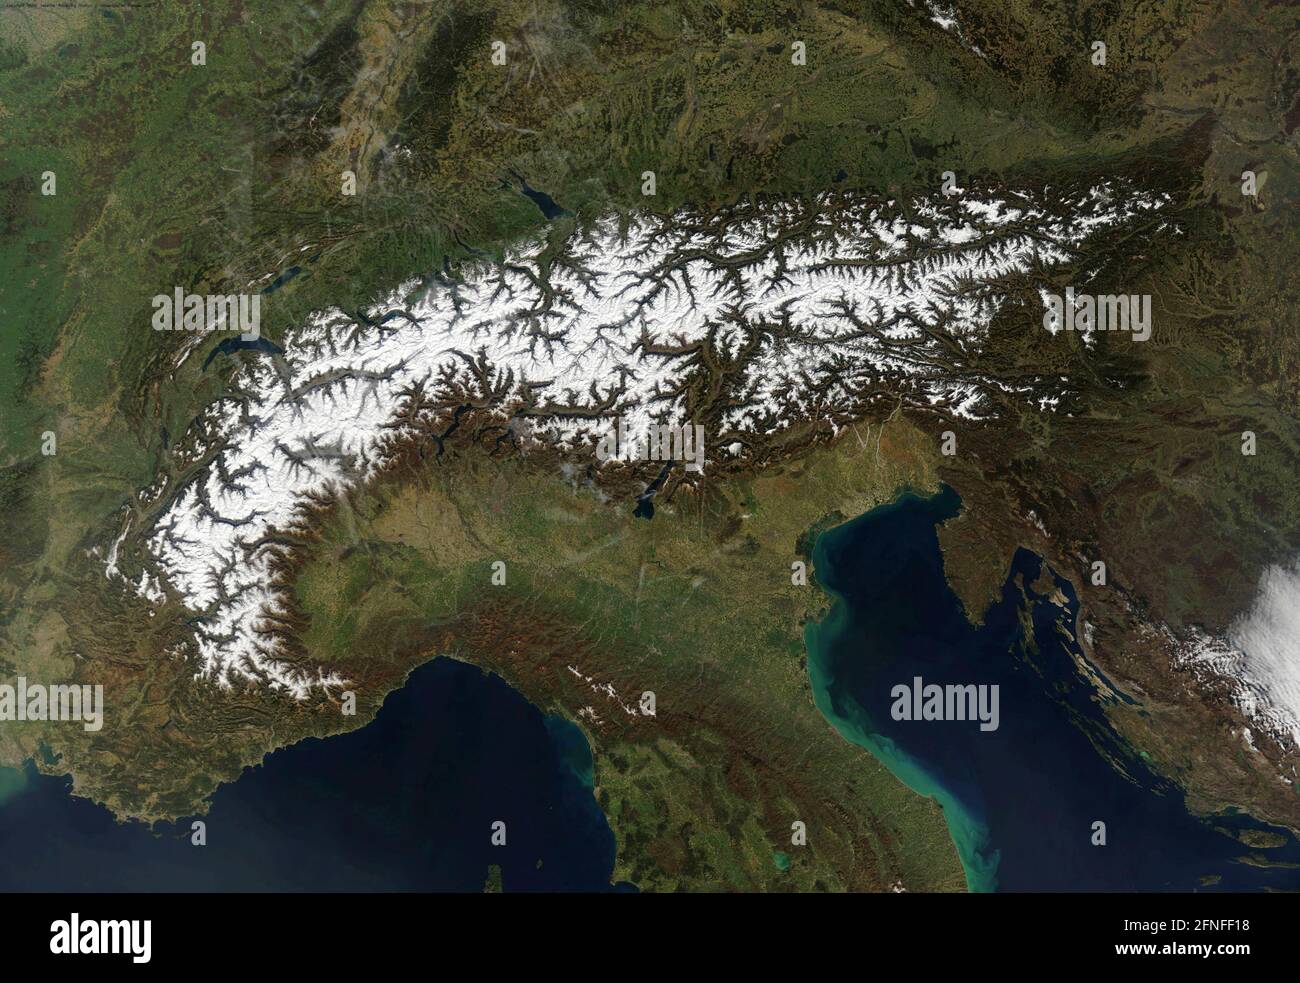 EUROPE CENTRALE - 27 janvier 2011 - les Alpes forment un croissant qui s'étend des côtes méditerranéennes de l'Italie et de la France à Vienne, en Autriche. Sur Januar Banque D'Images